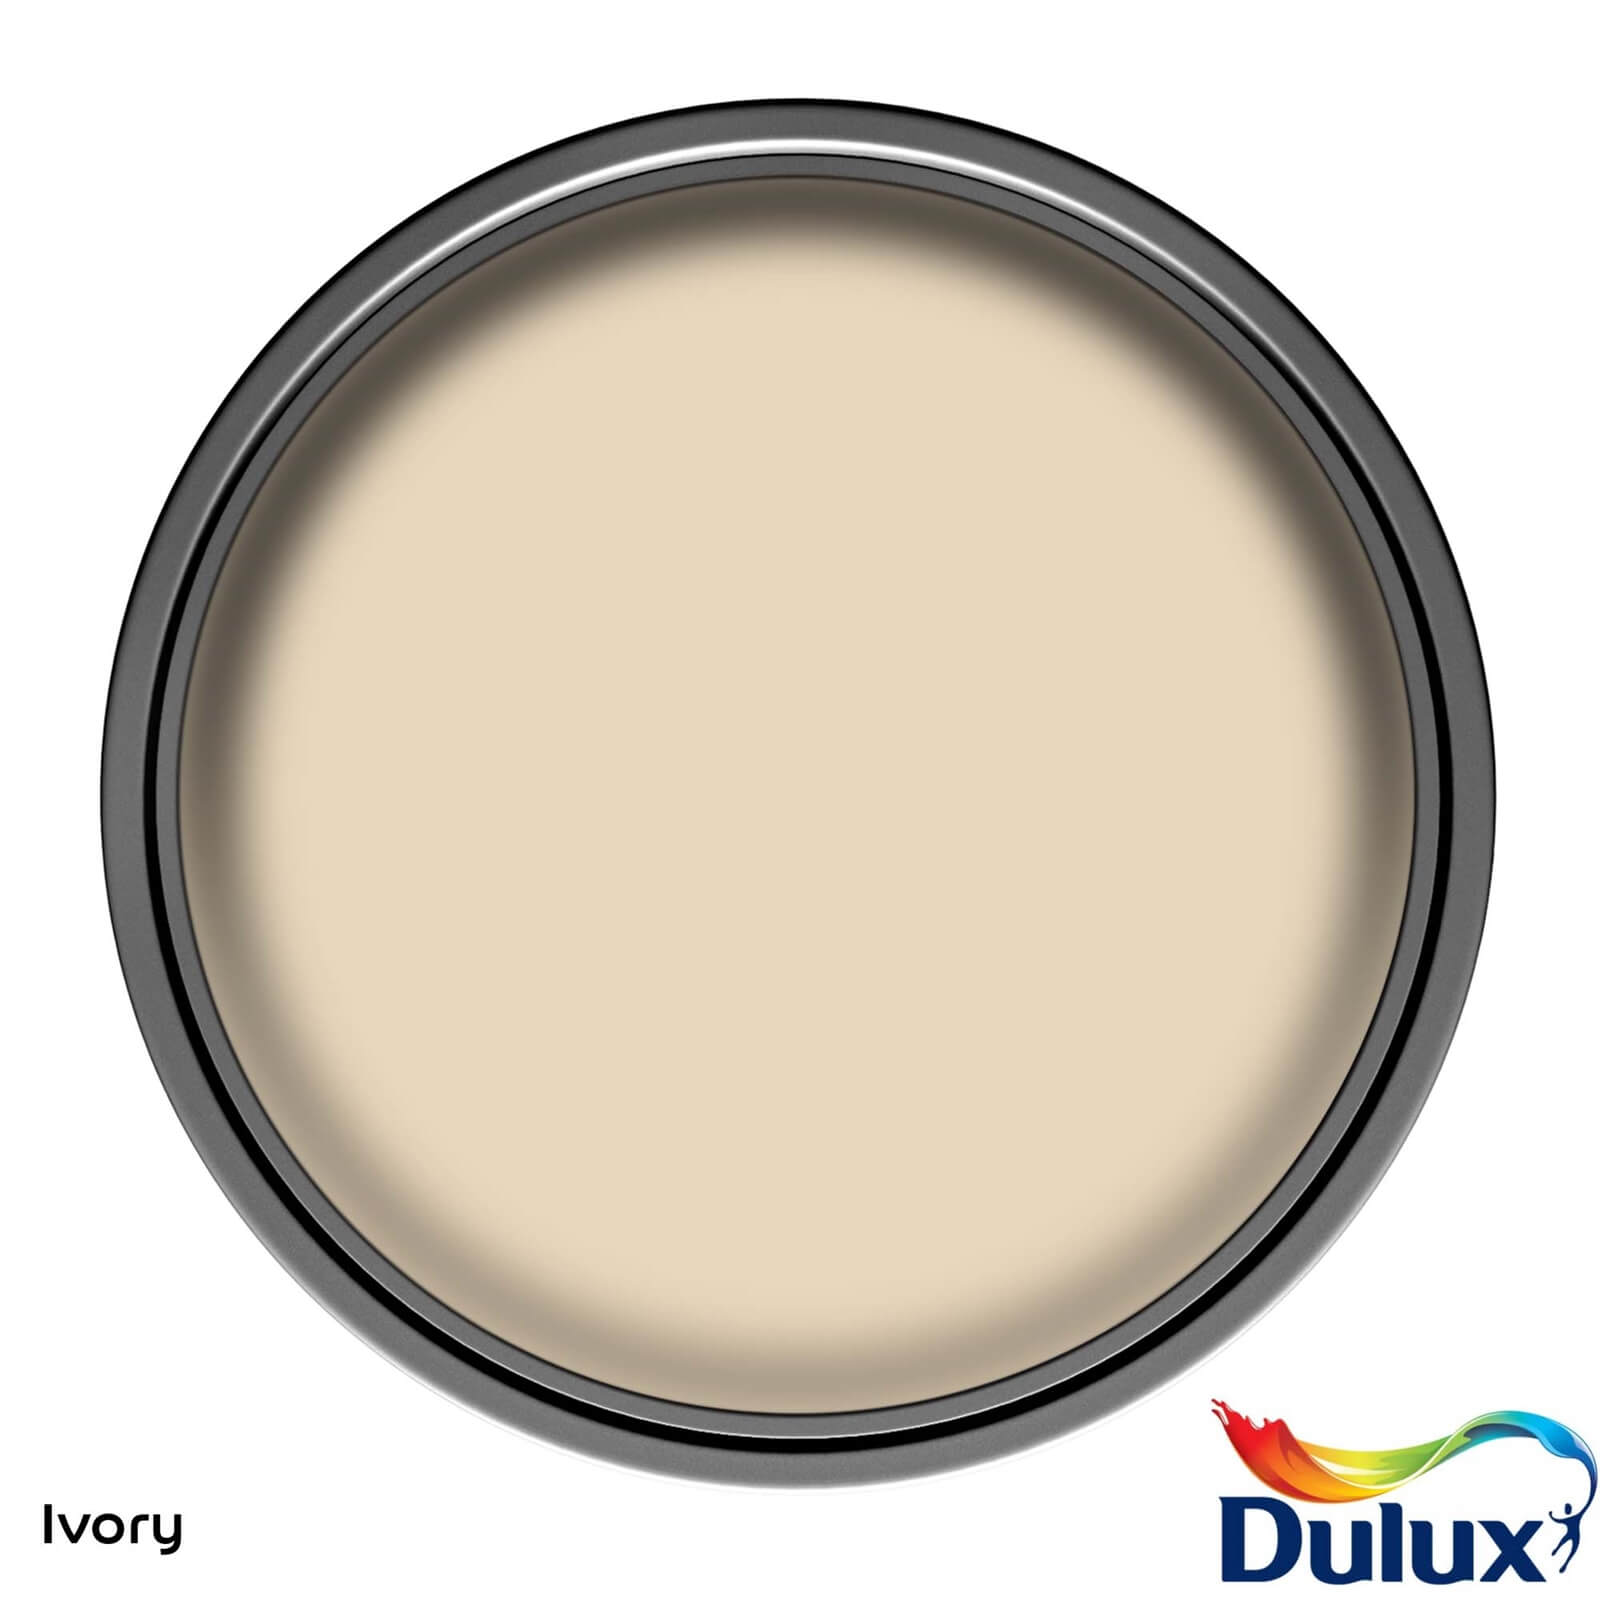 Dulux Easycare Washable & Tough Matt Paint Ivory - 5L